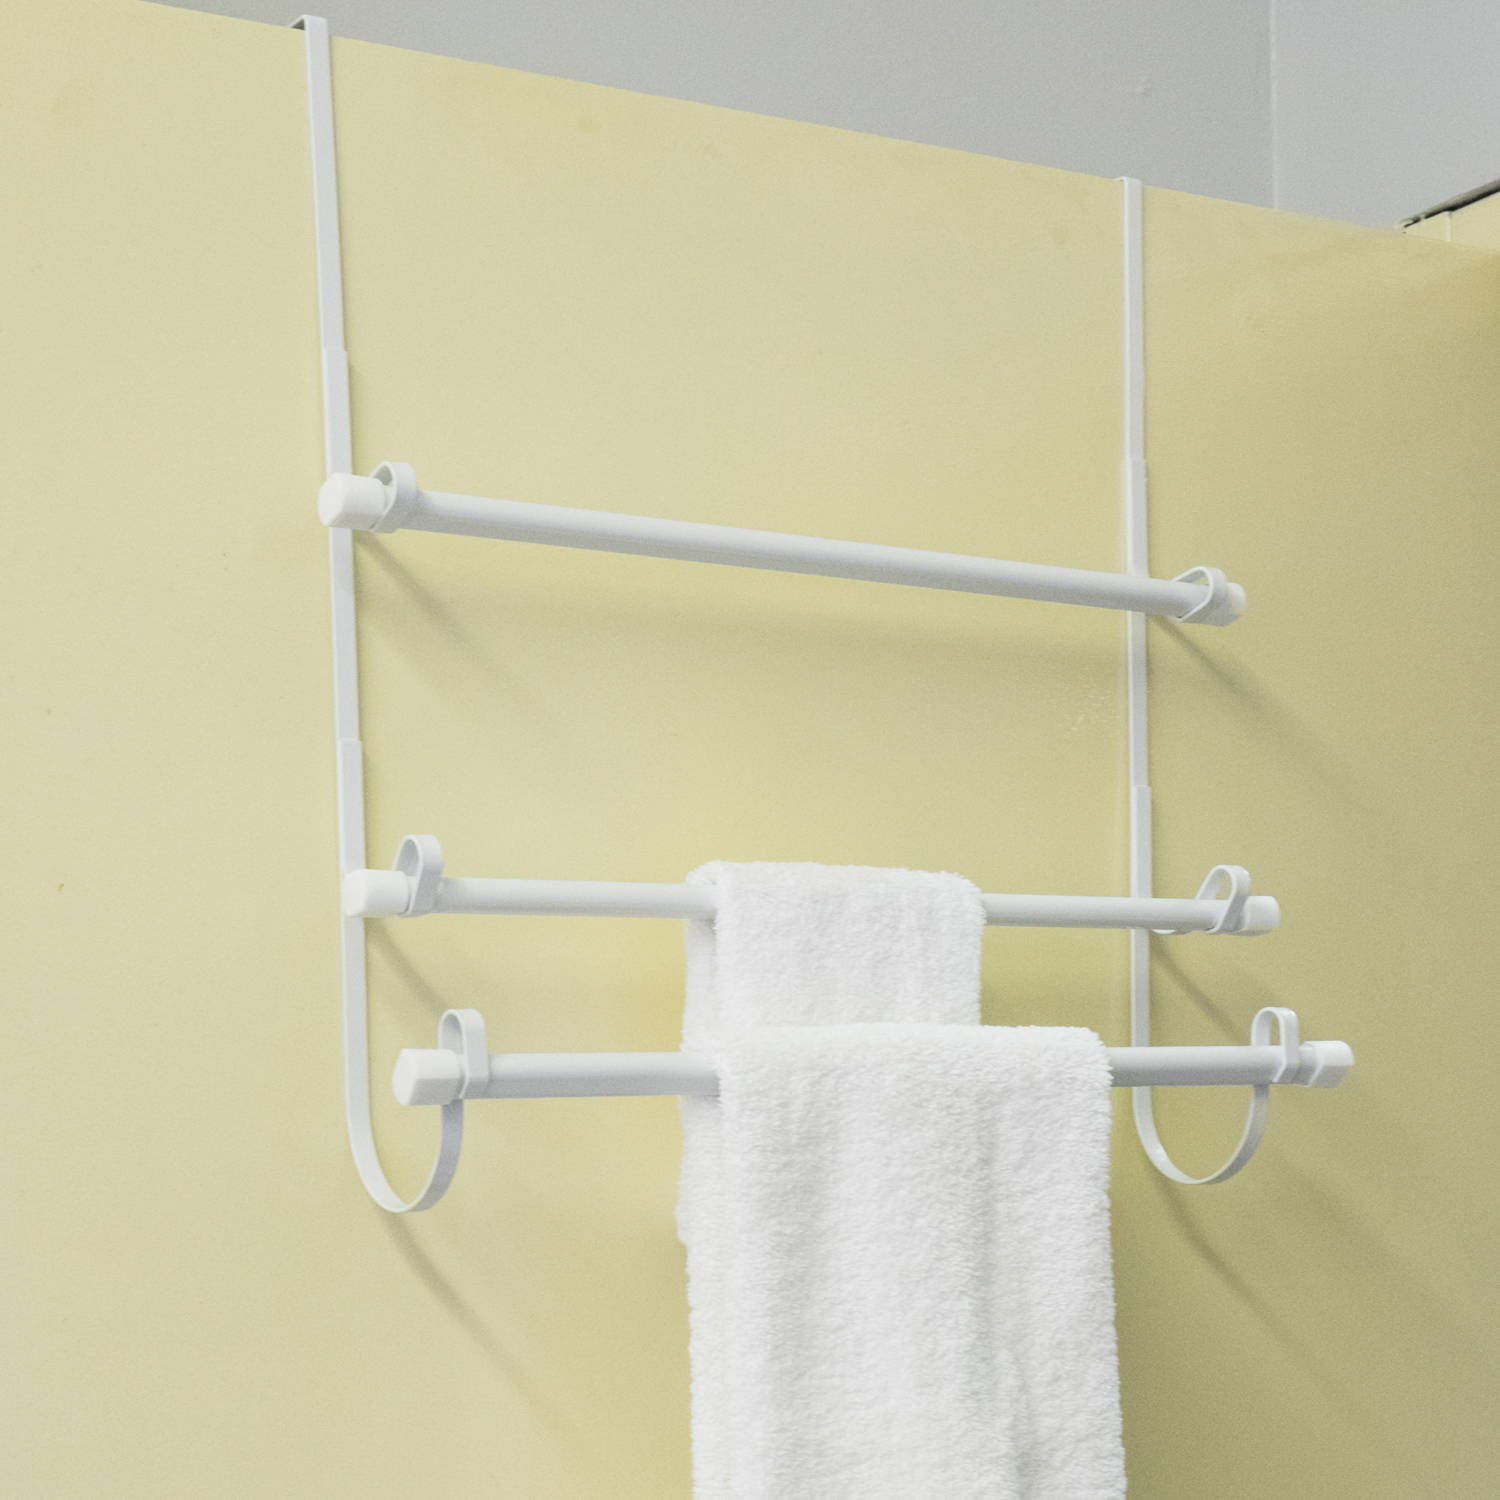 Epoxy Steel Over The Door Bathroom White Towel Hanger Organizer, 3 Bar Rack